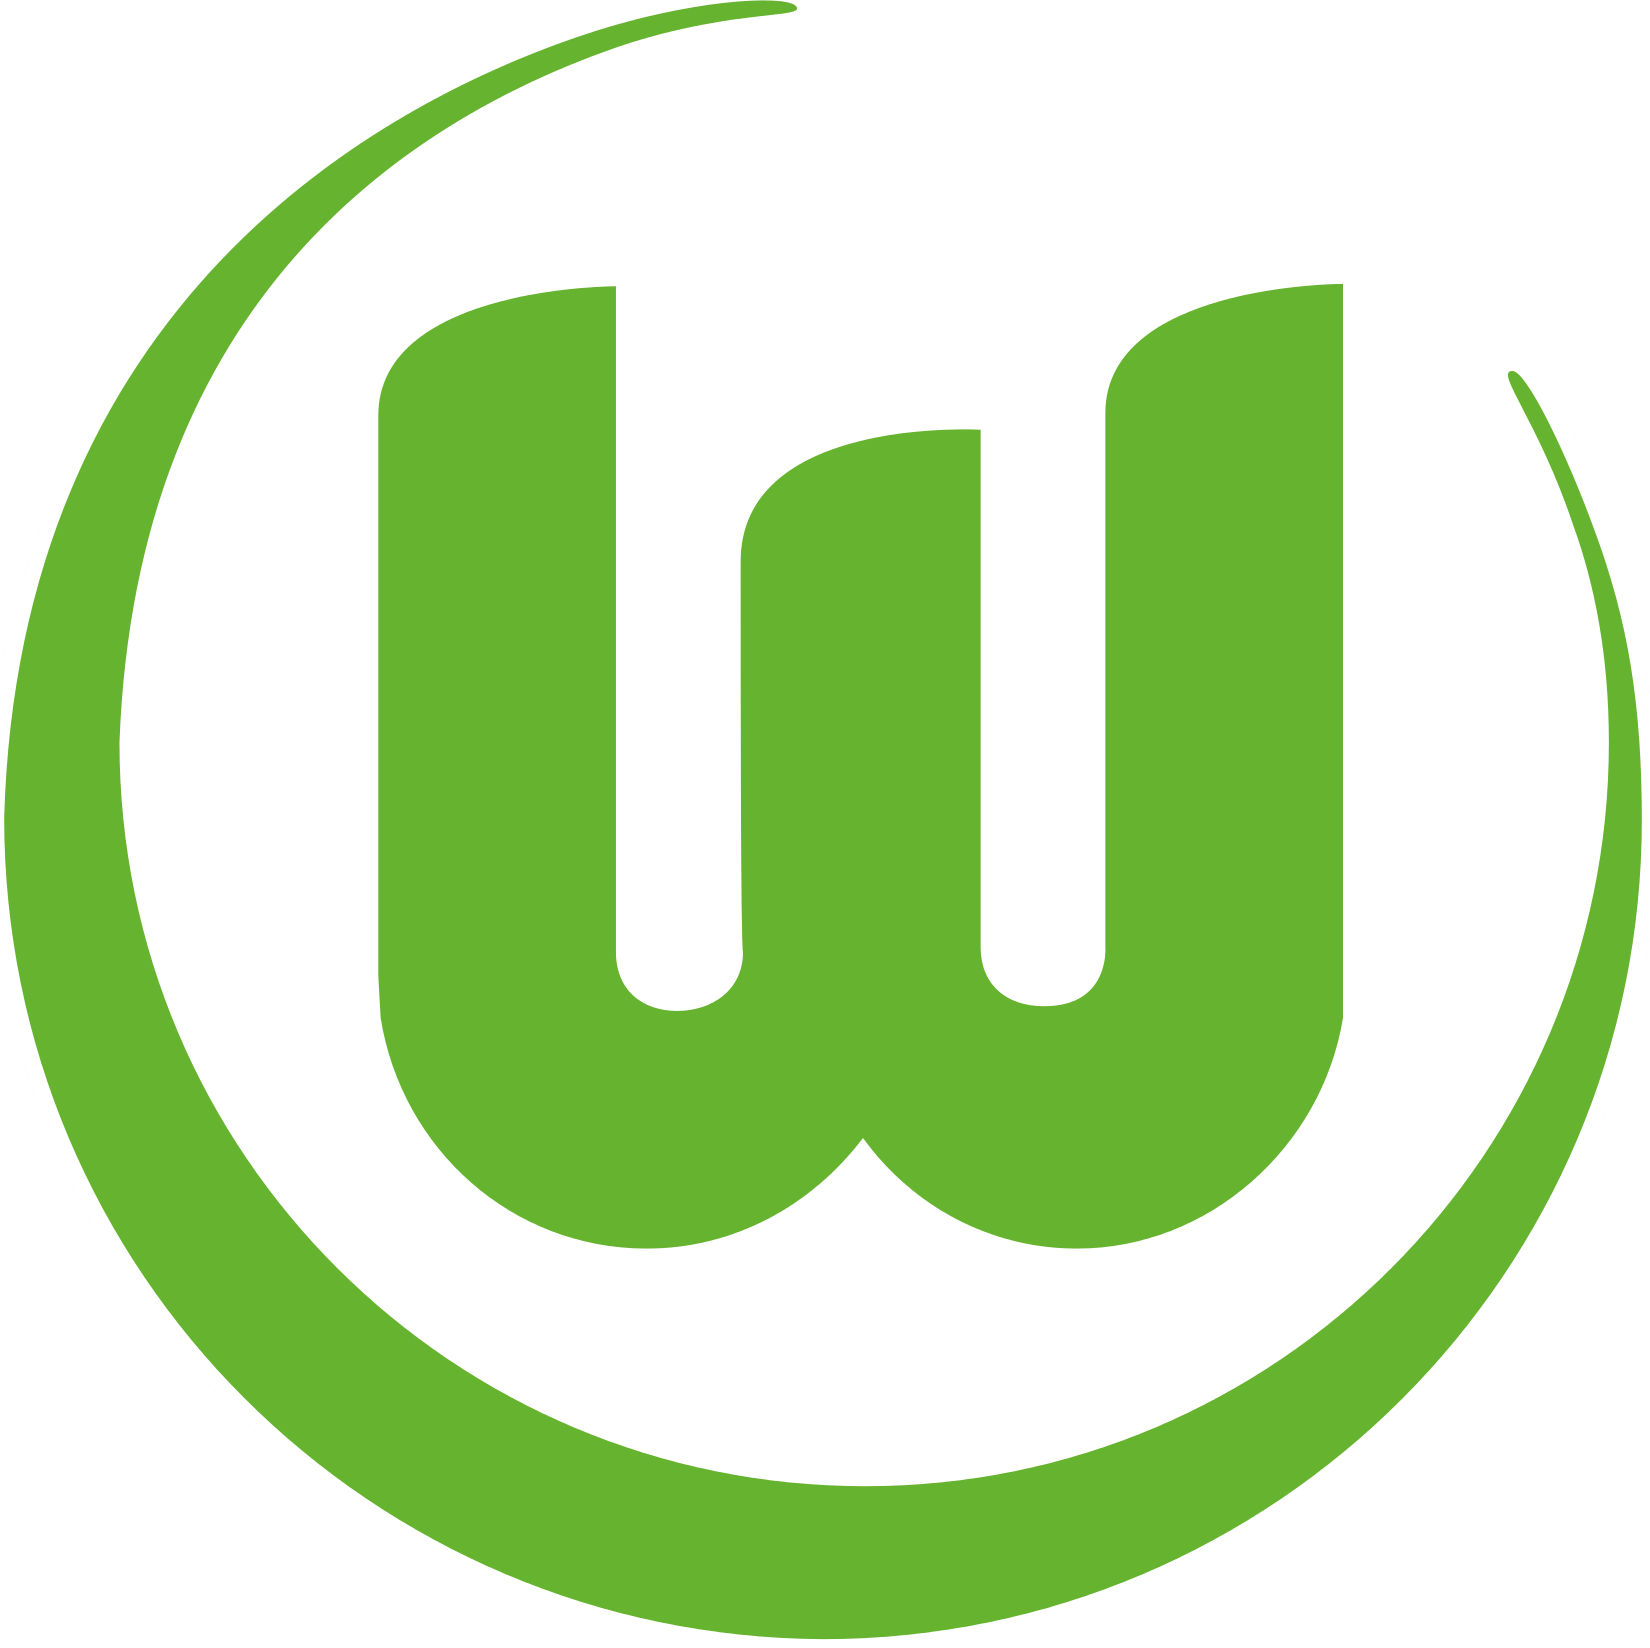 Wappen VfL Wolfsburg 1945 diverse